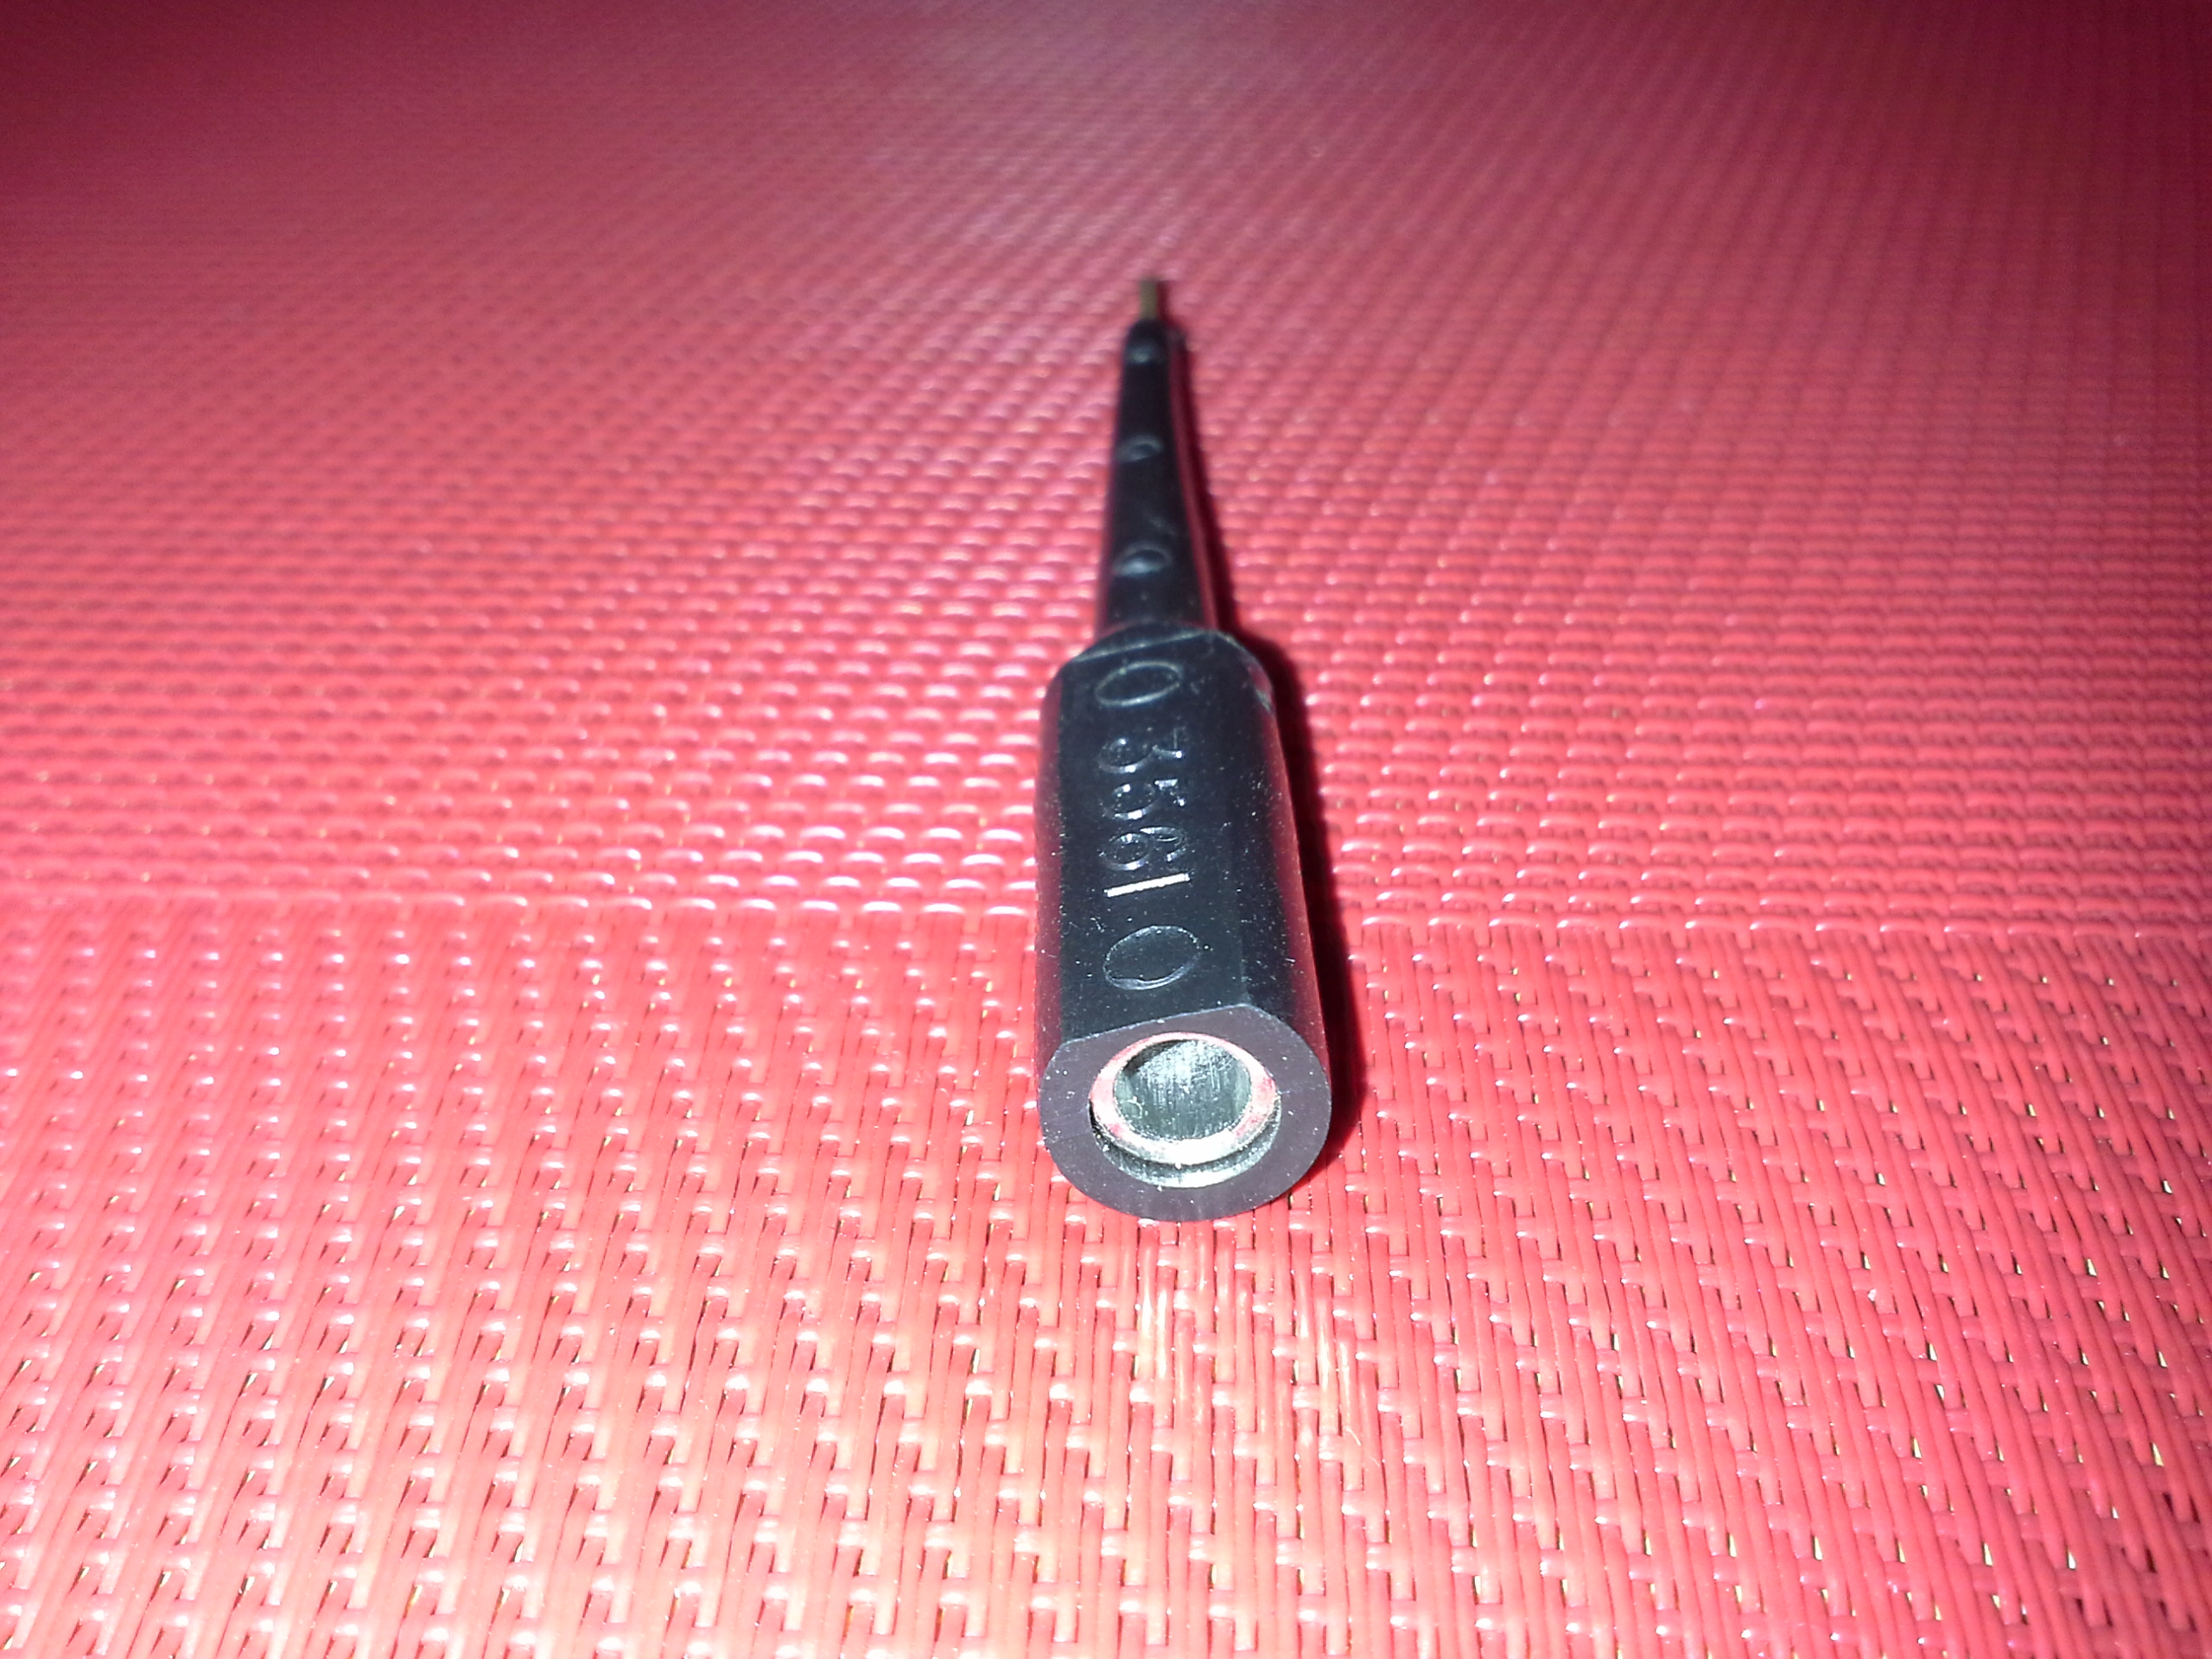 Test-Adapter schwarz-3561 für Mess-und Prüfgeräte